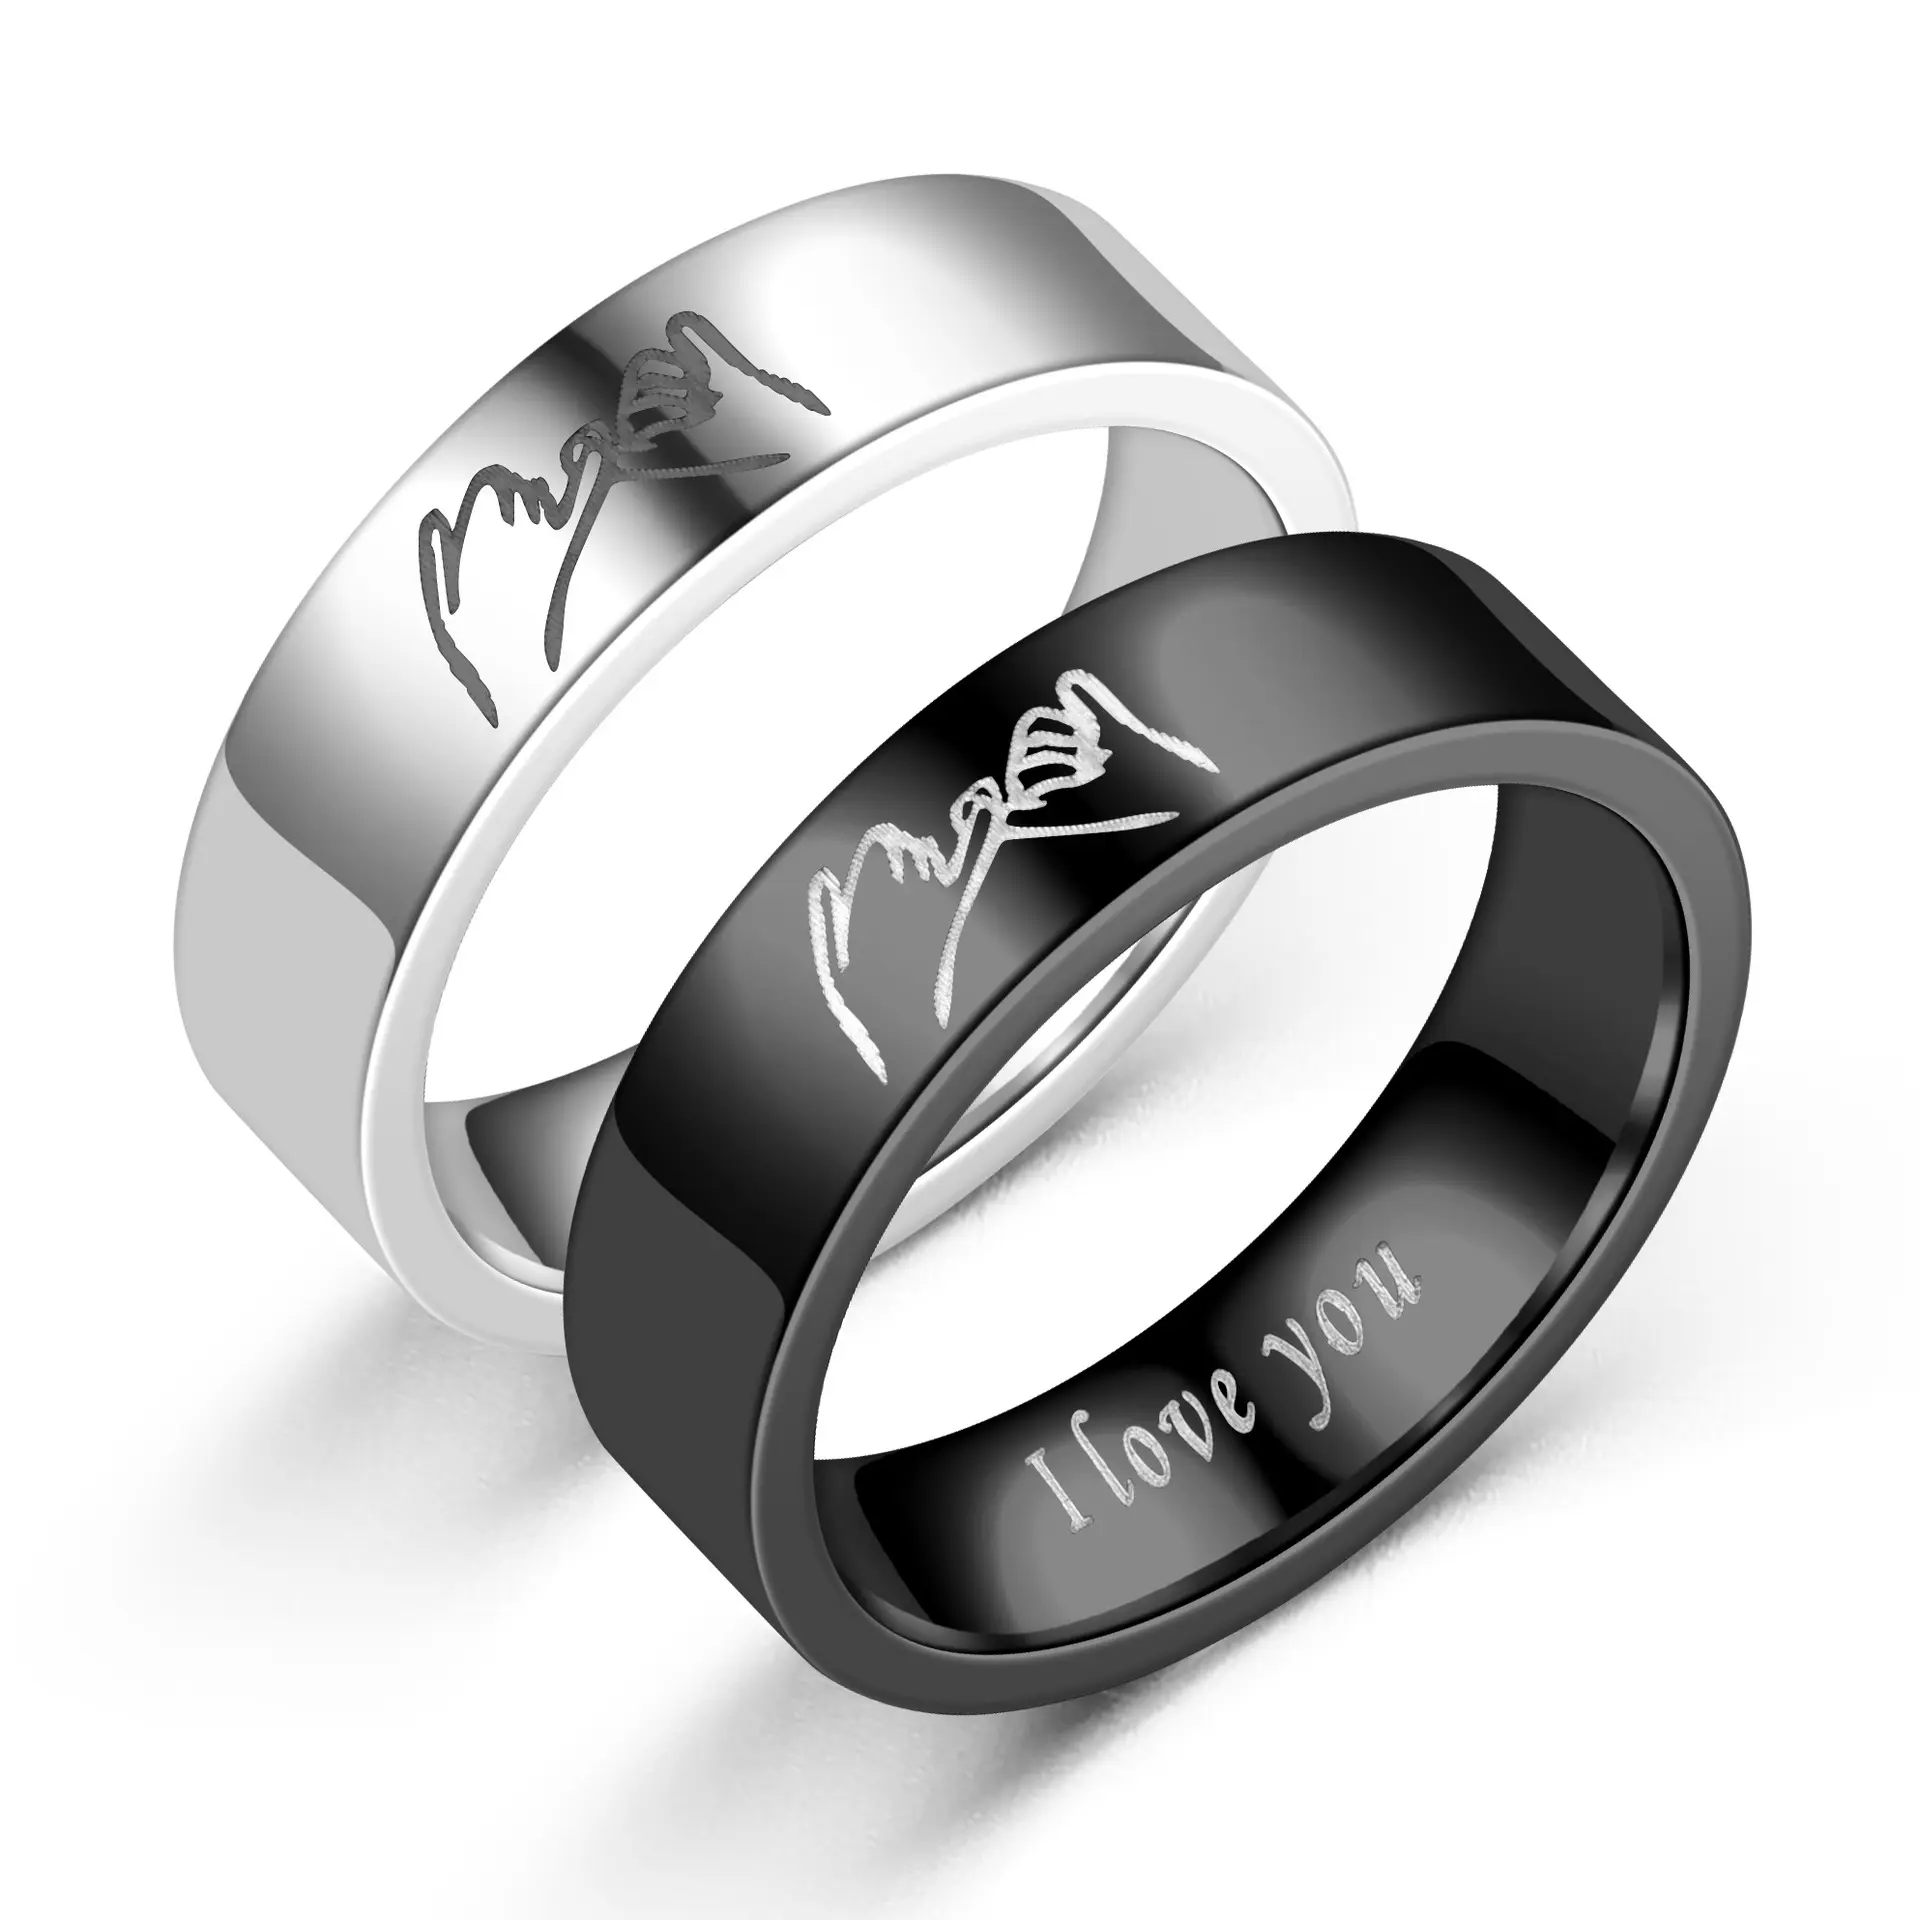 Sevgililer günü hediye kadın erkek dostluk paslanmaz çelik siyah gümüş kaplama özel Pinky yemin kazınmış söz yüzüğü çift için